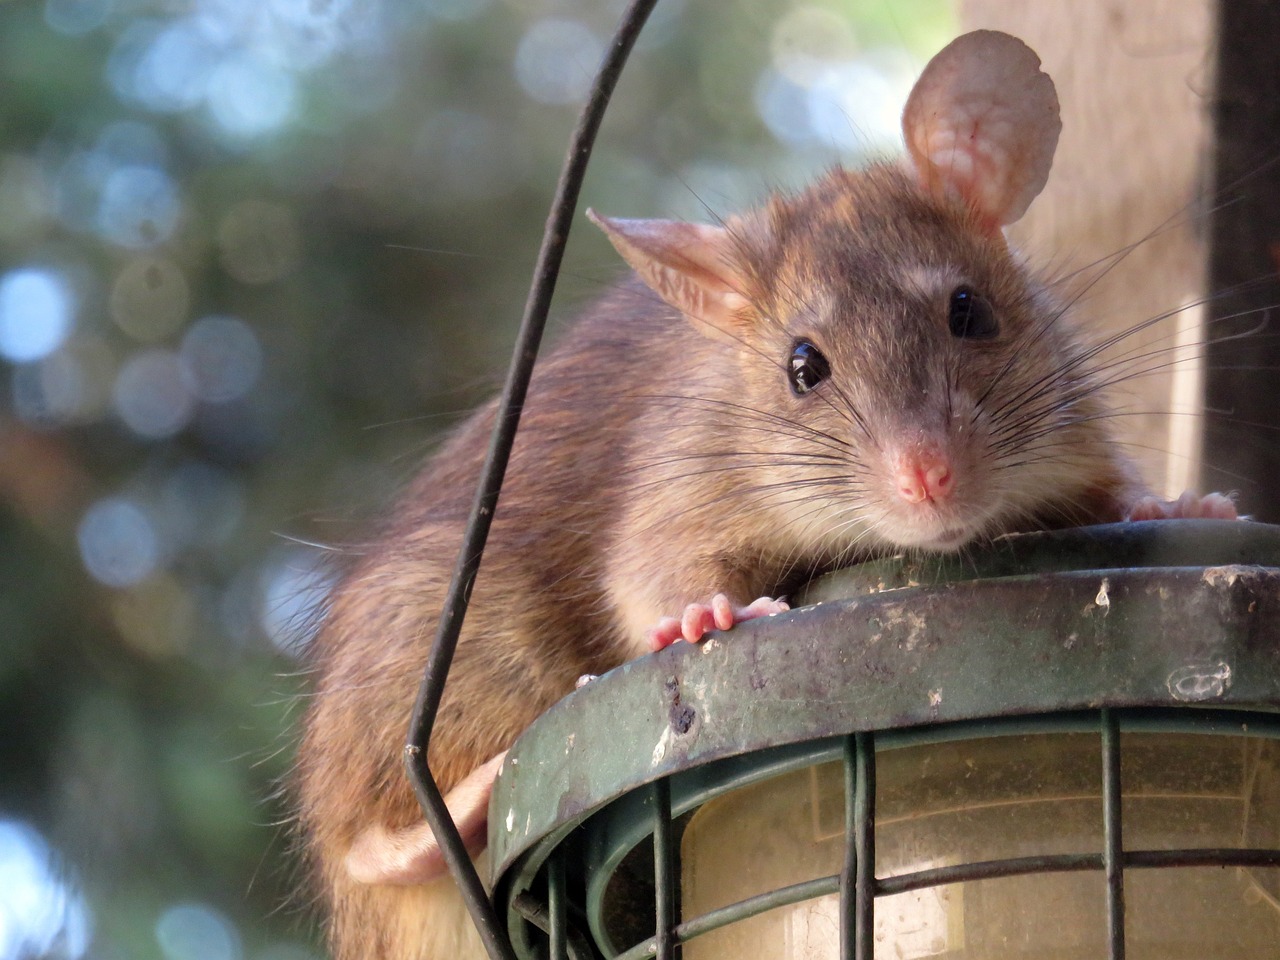 Un experimento prueba que las ratas pueden viajar en el espacio y tiempo usando su imaginación